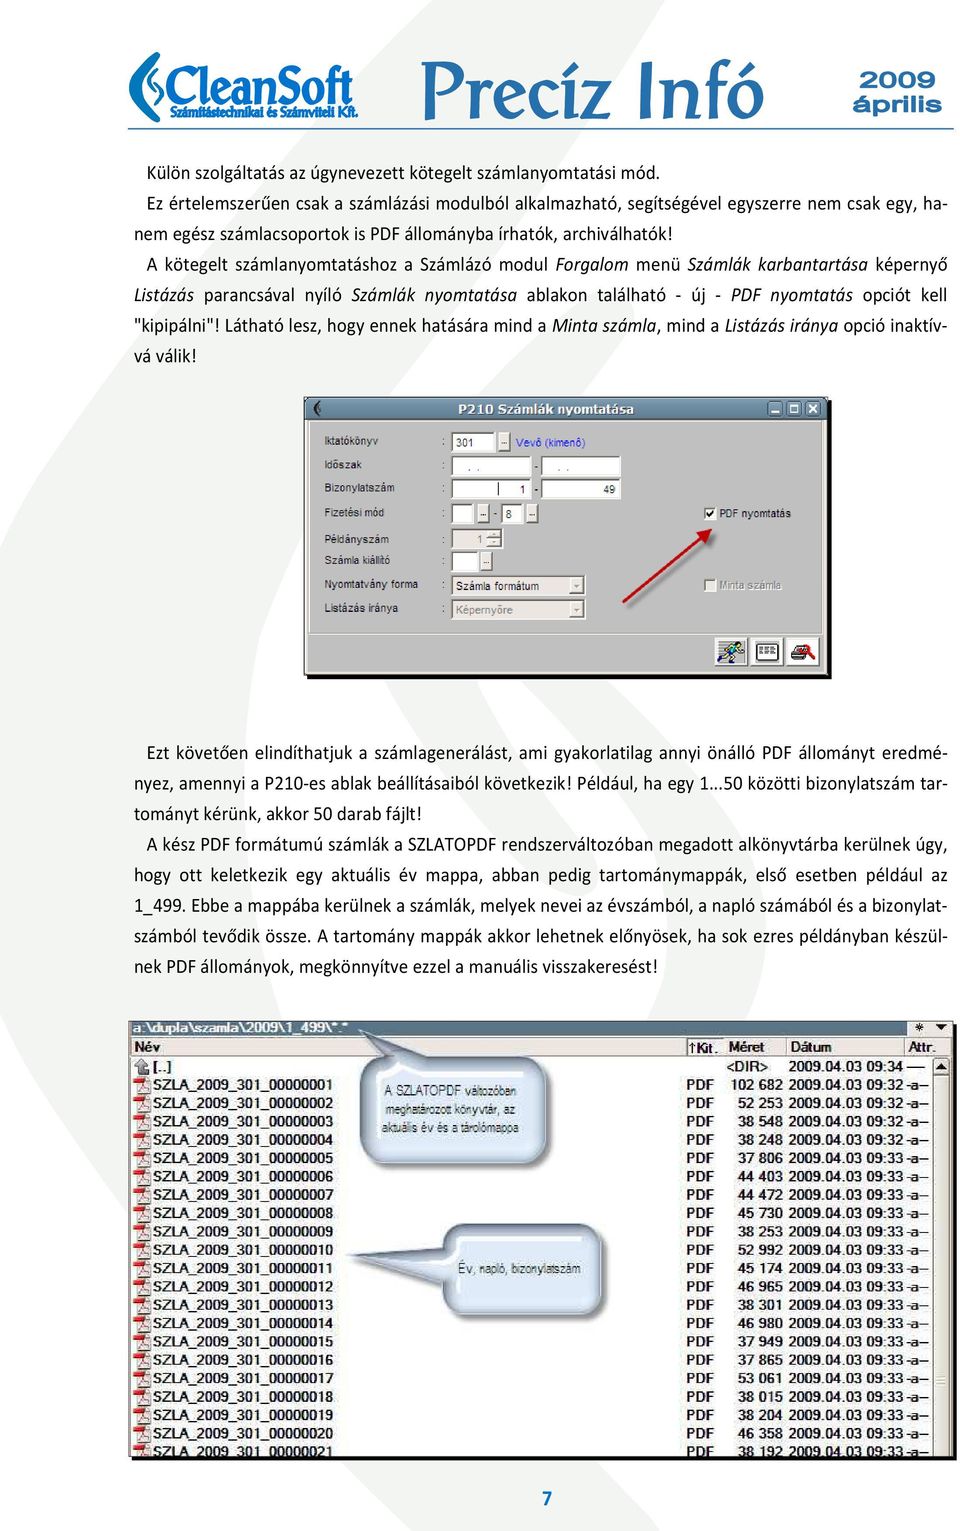 A kötegelt számlanyomtatáshoz a Számlázó modul Forgalom menü Számlák karbantartása képernyő Listázás parancsával nyíló Számlák nyomtatása ablakon található - új - PDF nyomtatás opciót kell